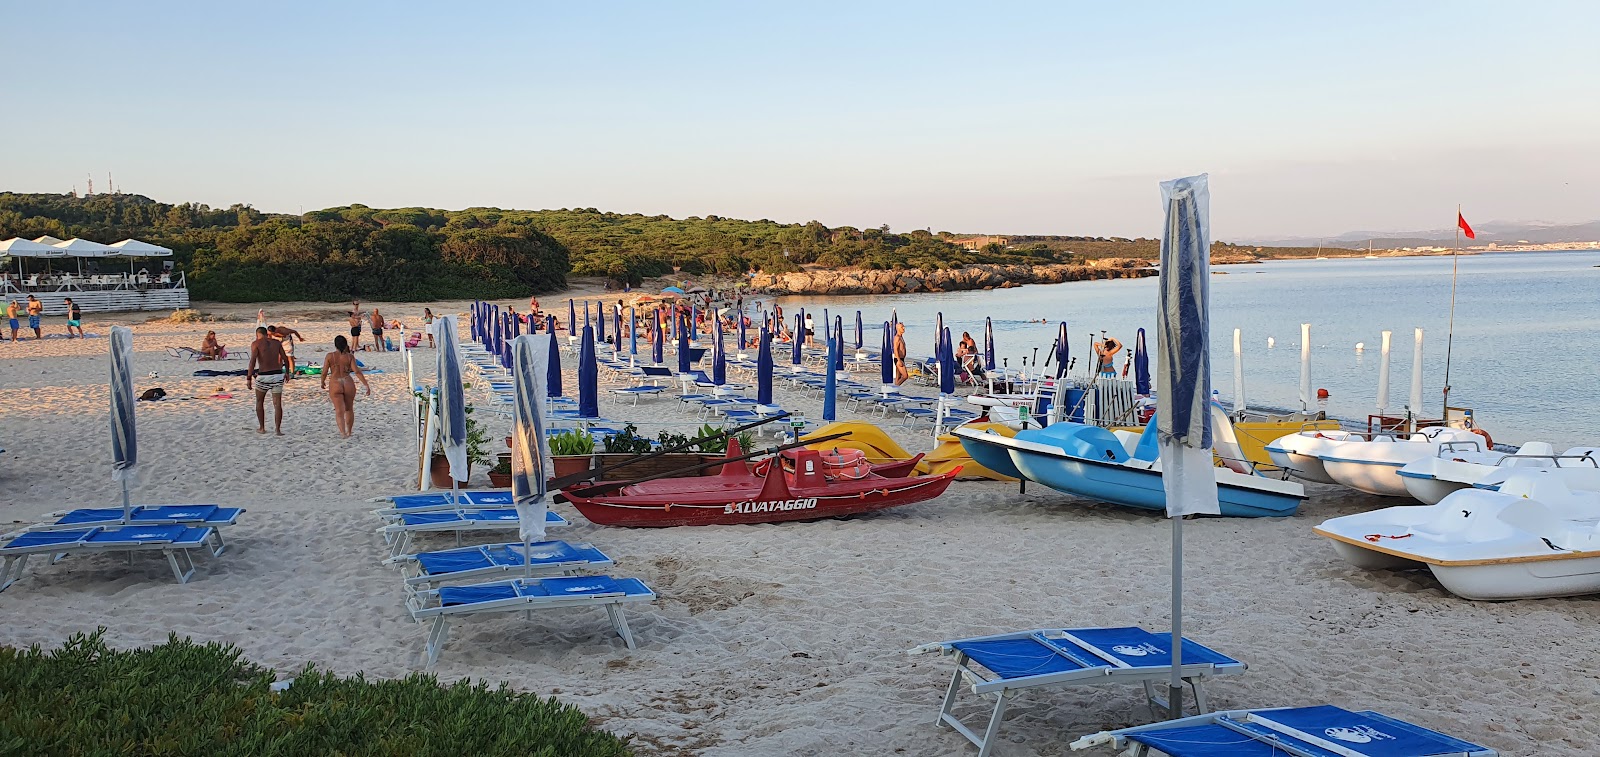 Zdjęcie Plaża Lazzaretto - popularne miejsce wśród znawców relaksu